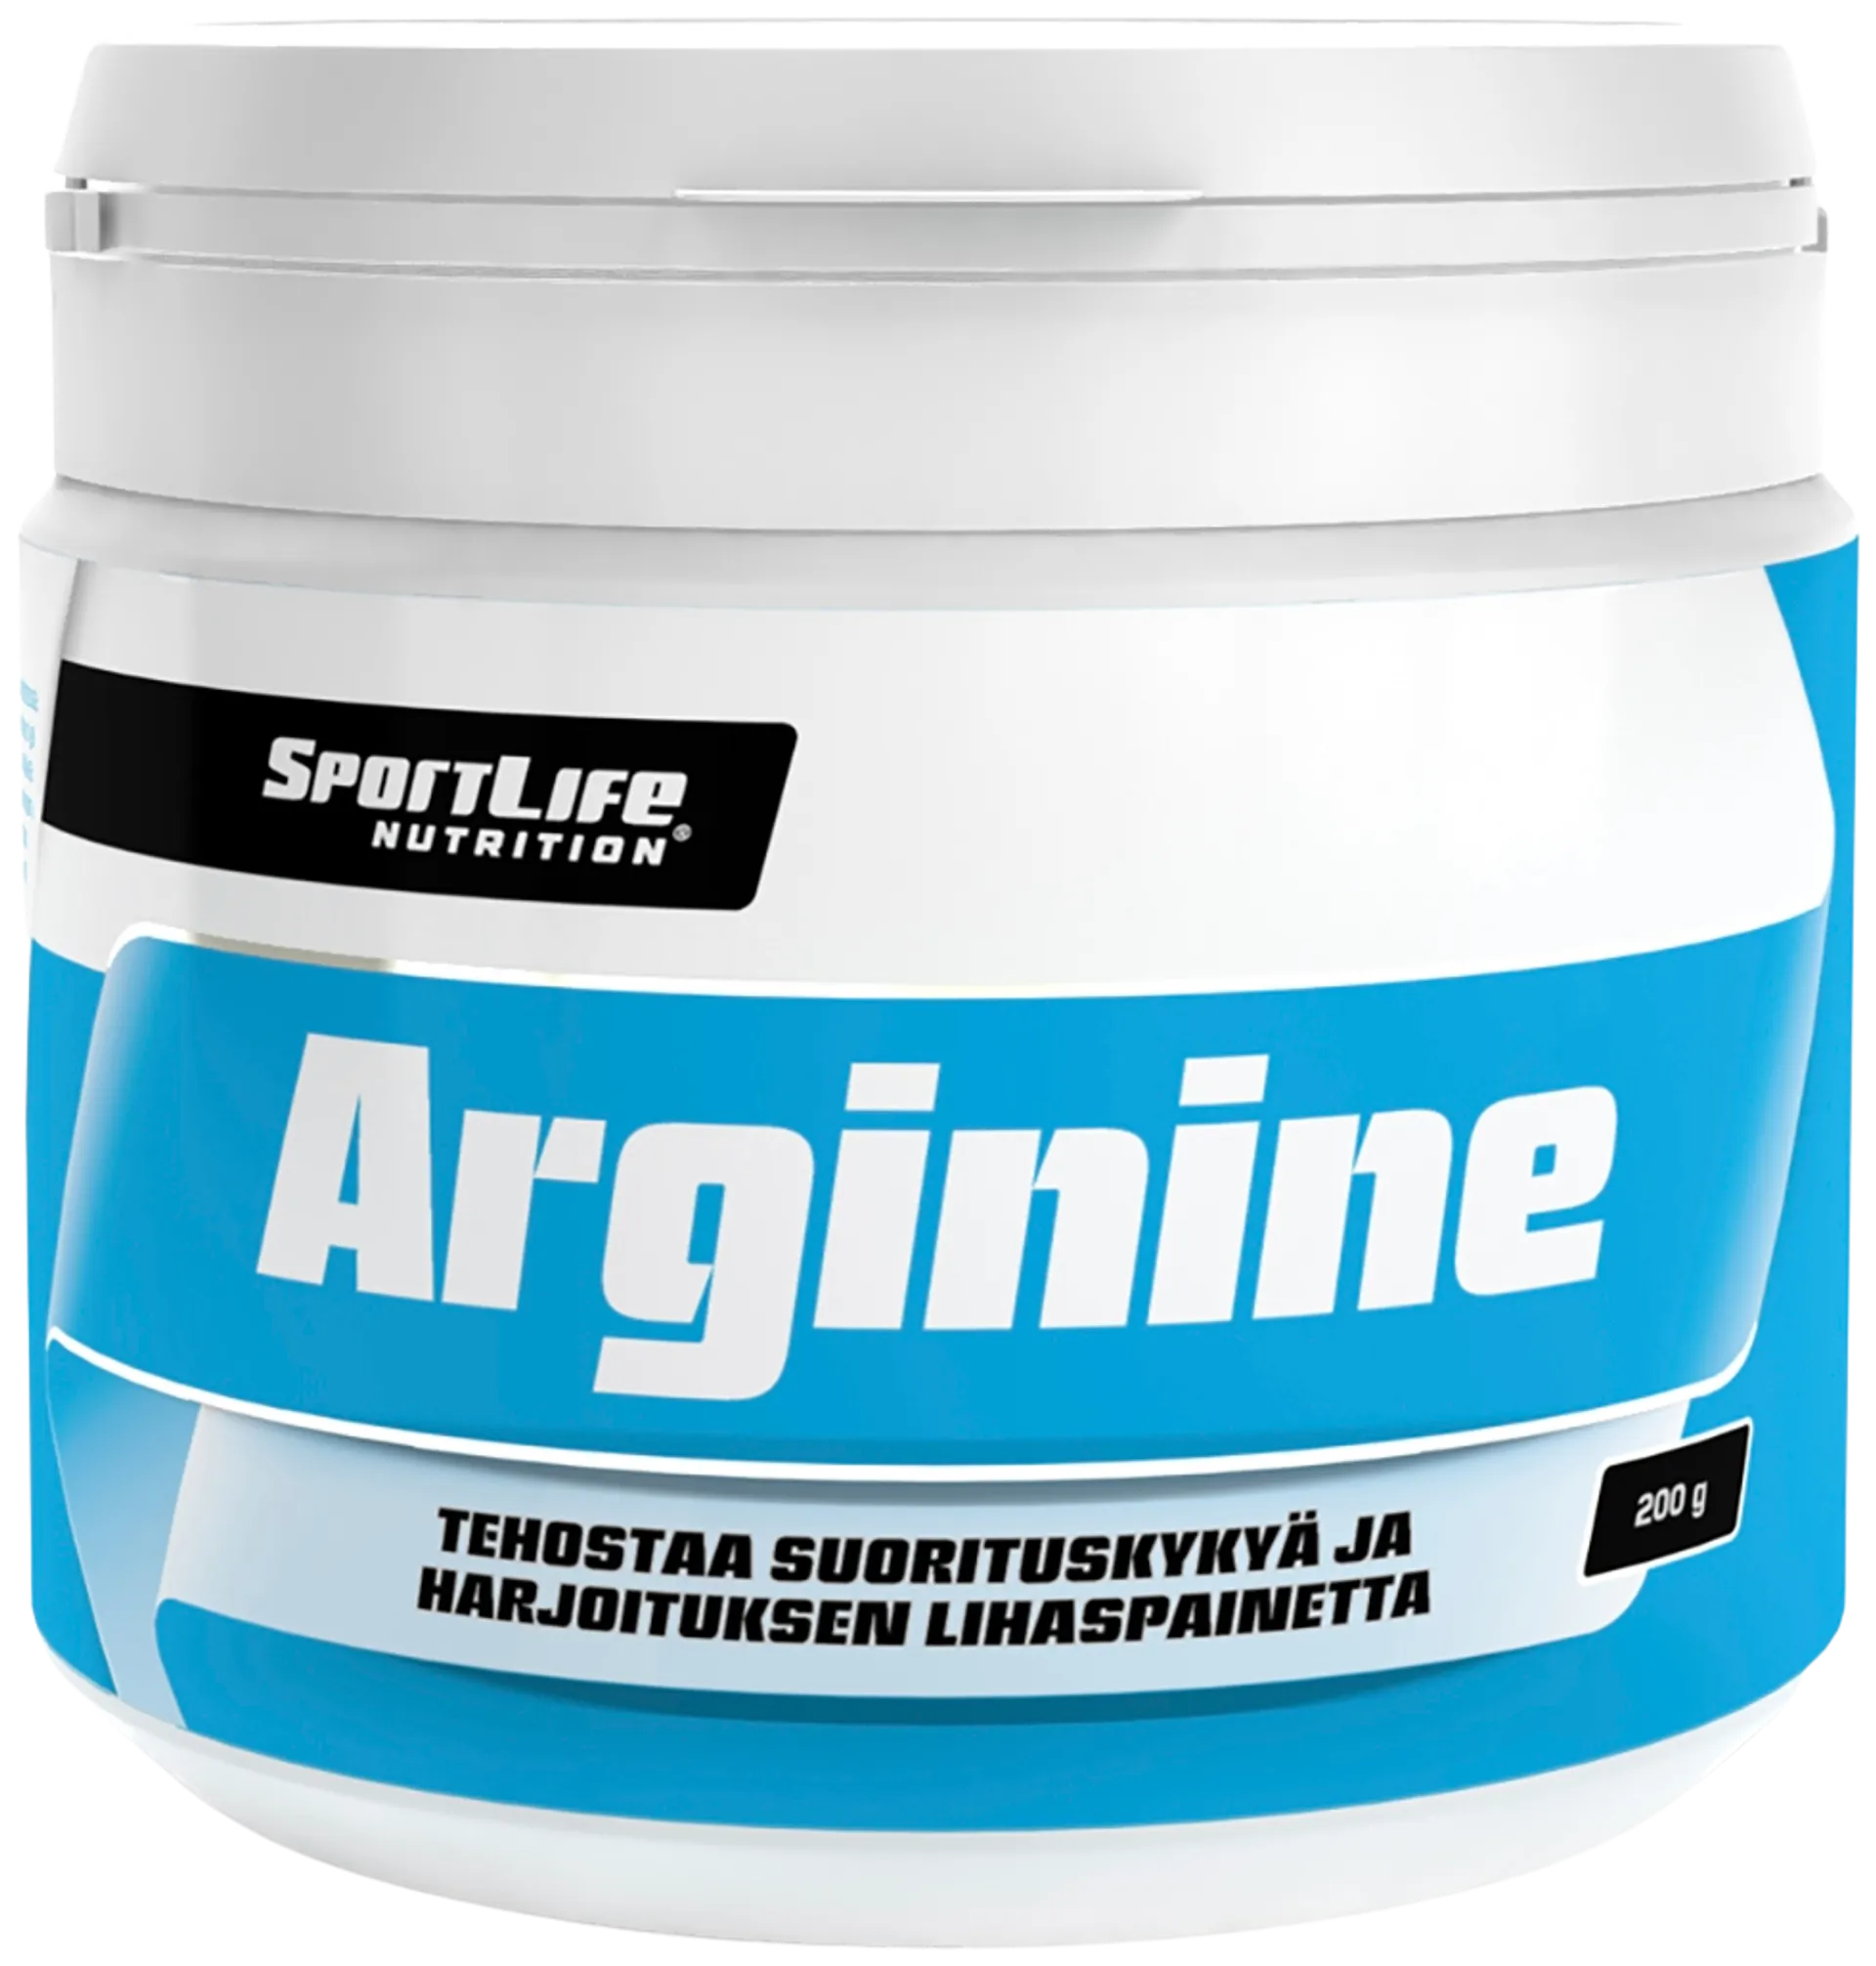 SportLife Nutrition Arginine 200g  L-arginiinijauhe